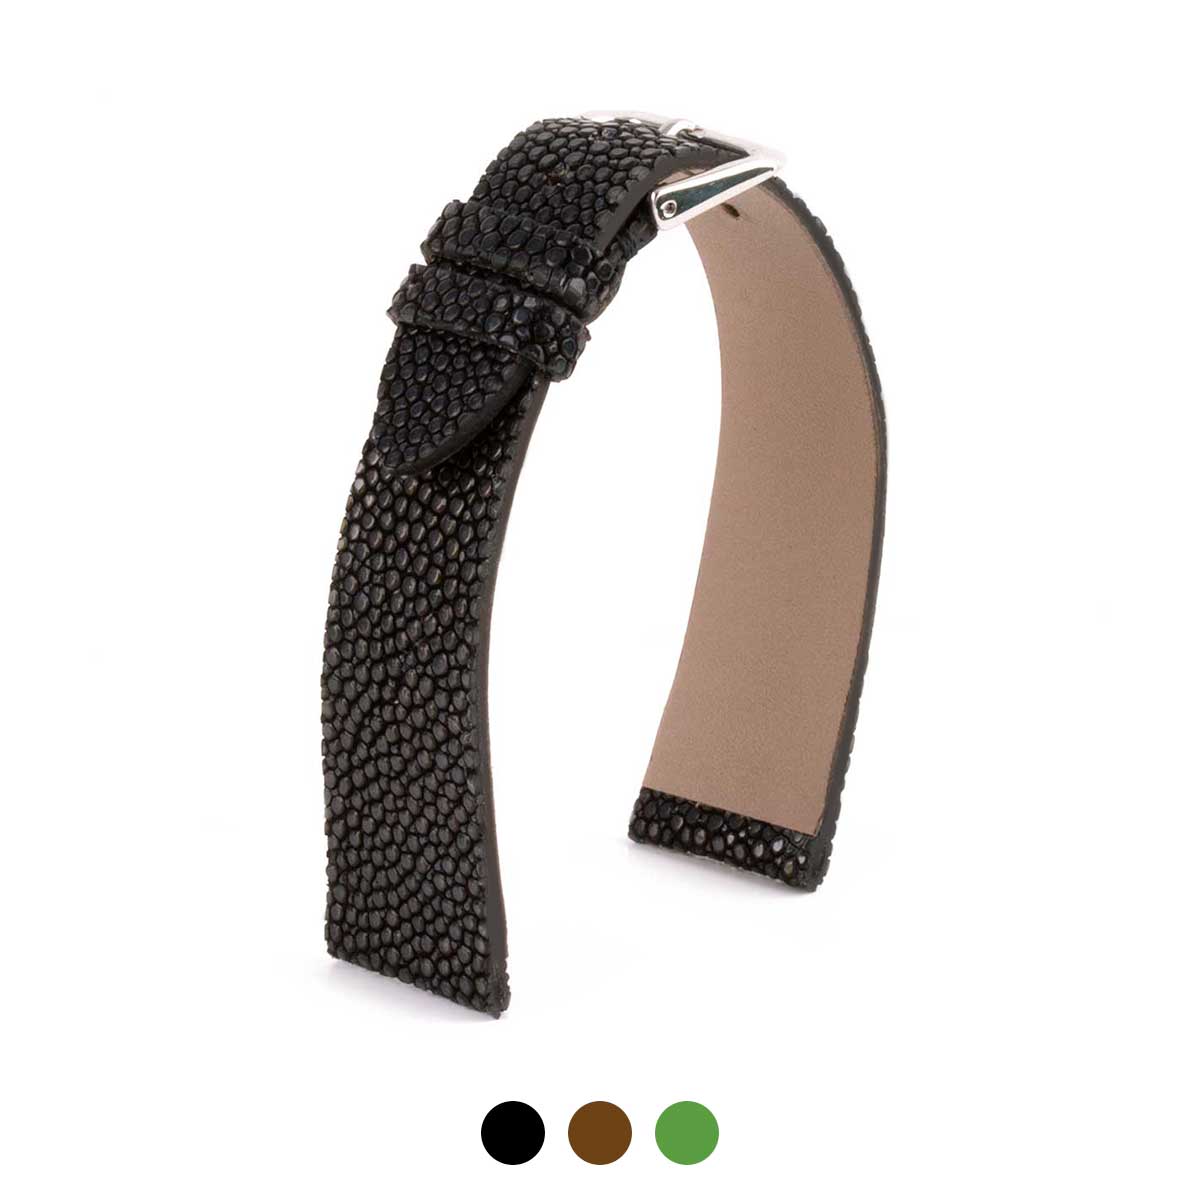 singray metal strap, for Christmas gift. looks good on men too i